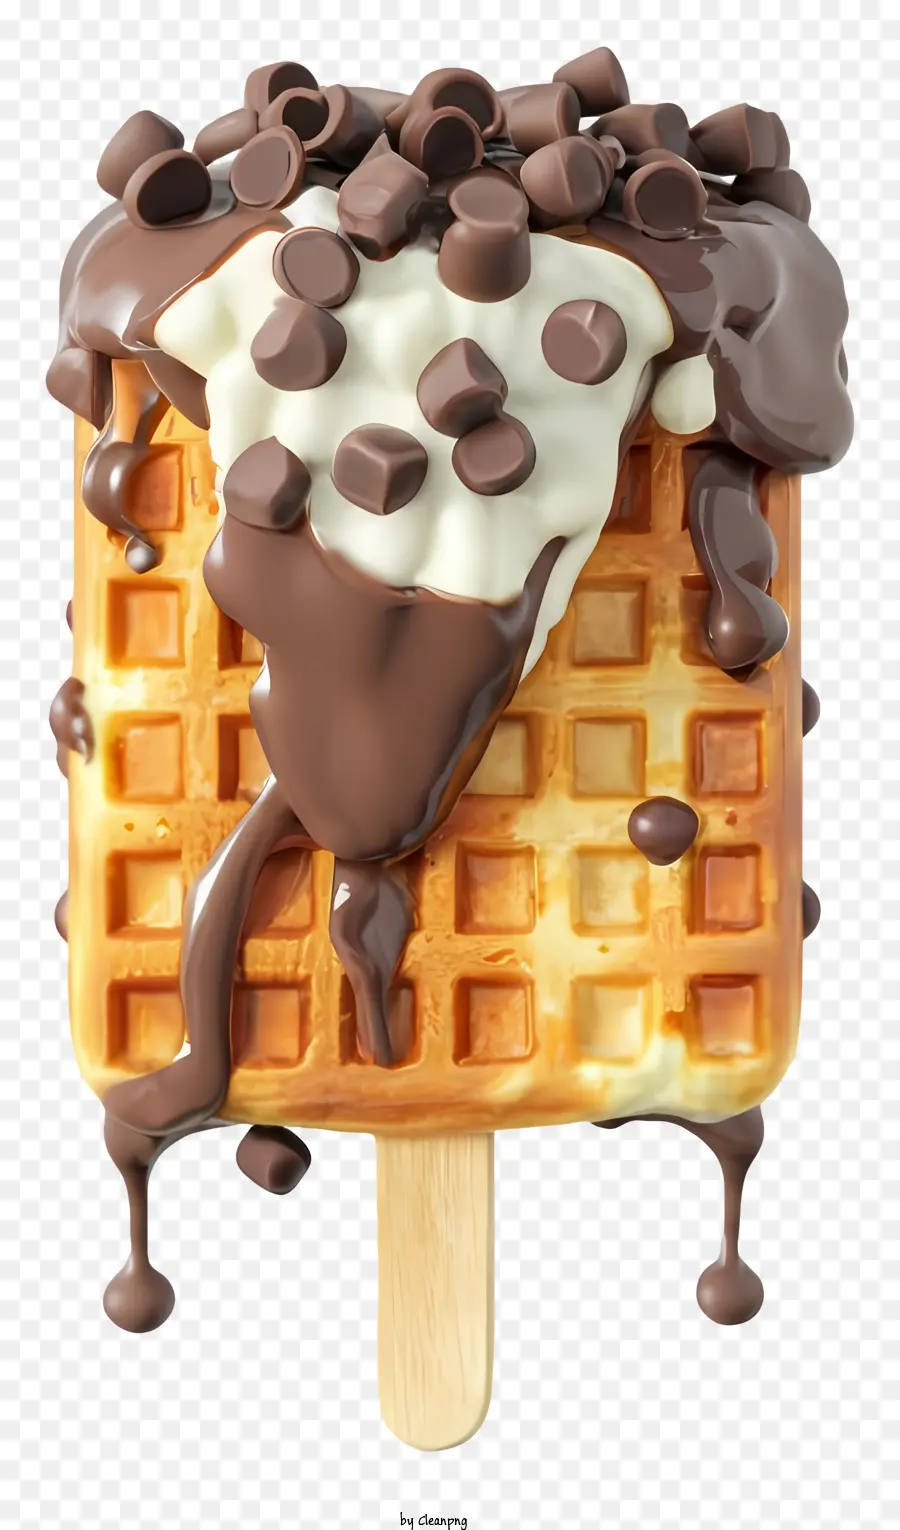 Cartoon Waffelschokoladenstückchen Weißer Schokoladen -Schokoladensirup weißer Schokoladen -Zuckerguss - Nahaufnahme Bild von Schokoladen-Chip-Waffel am Stock